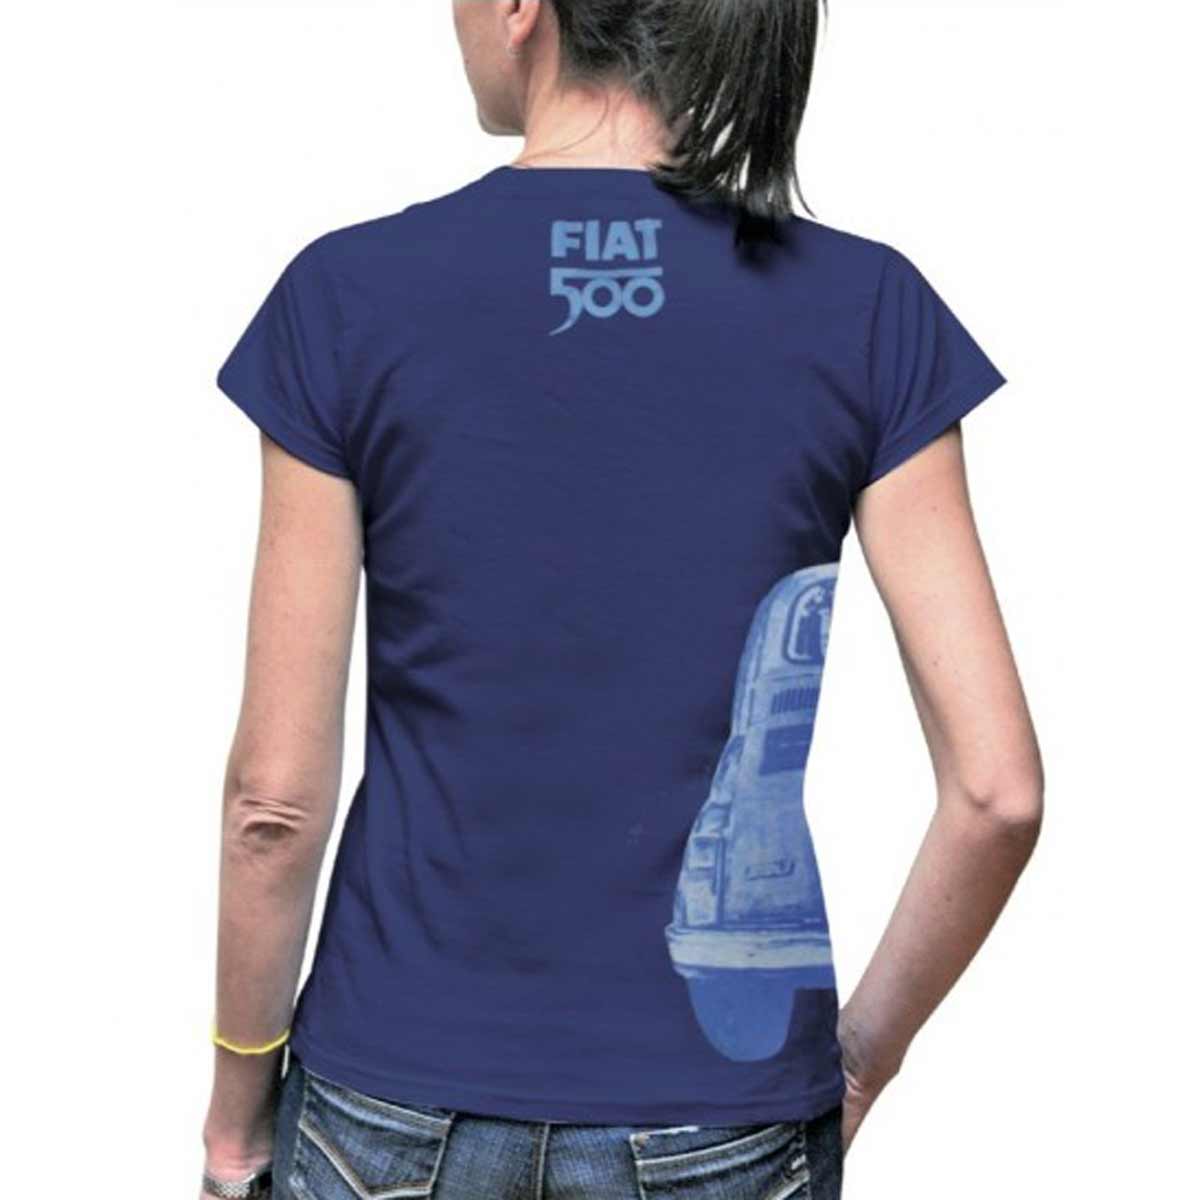 Fiat 500 blue T-shirt